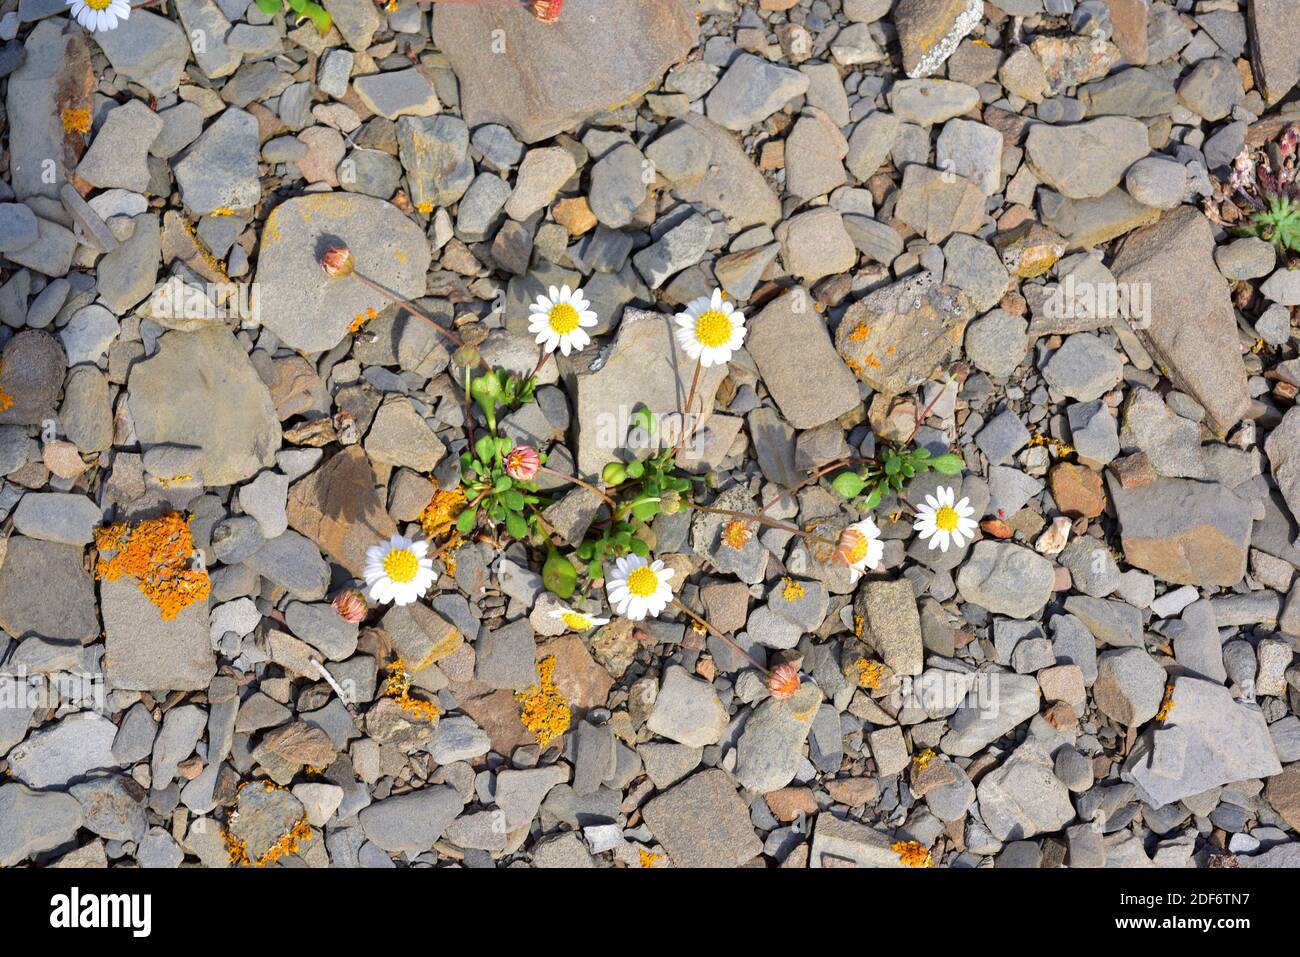 La daisy in miniatura o la daisy falsa (Bellium bellidioides) è una pianta erbacea endemica delle isole Baleari, della Corsica e della Sardegna. Questa foto è stata scattata Foto Stock